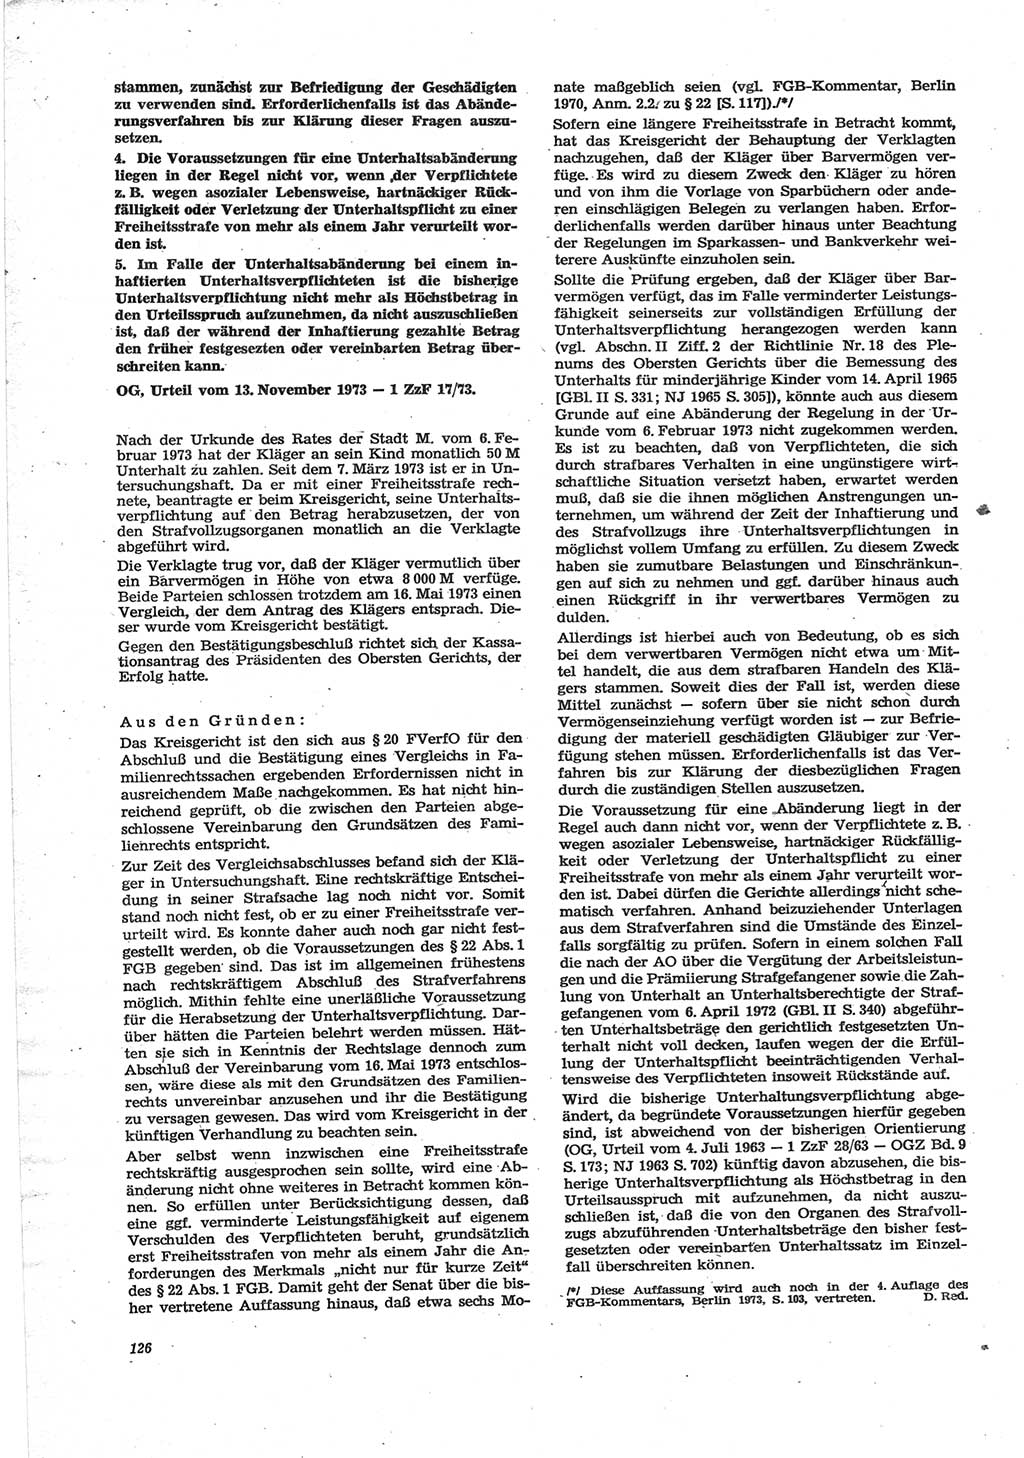 Neue Justiz (NJ), Zeitschrift für Recht und Rechtswissenschaft [Deutsche Demokratische Republik (DDR)], 28. Jahrgang 1974, Seite 126 (NJ DDR 1974, S. 126)